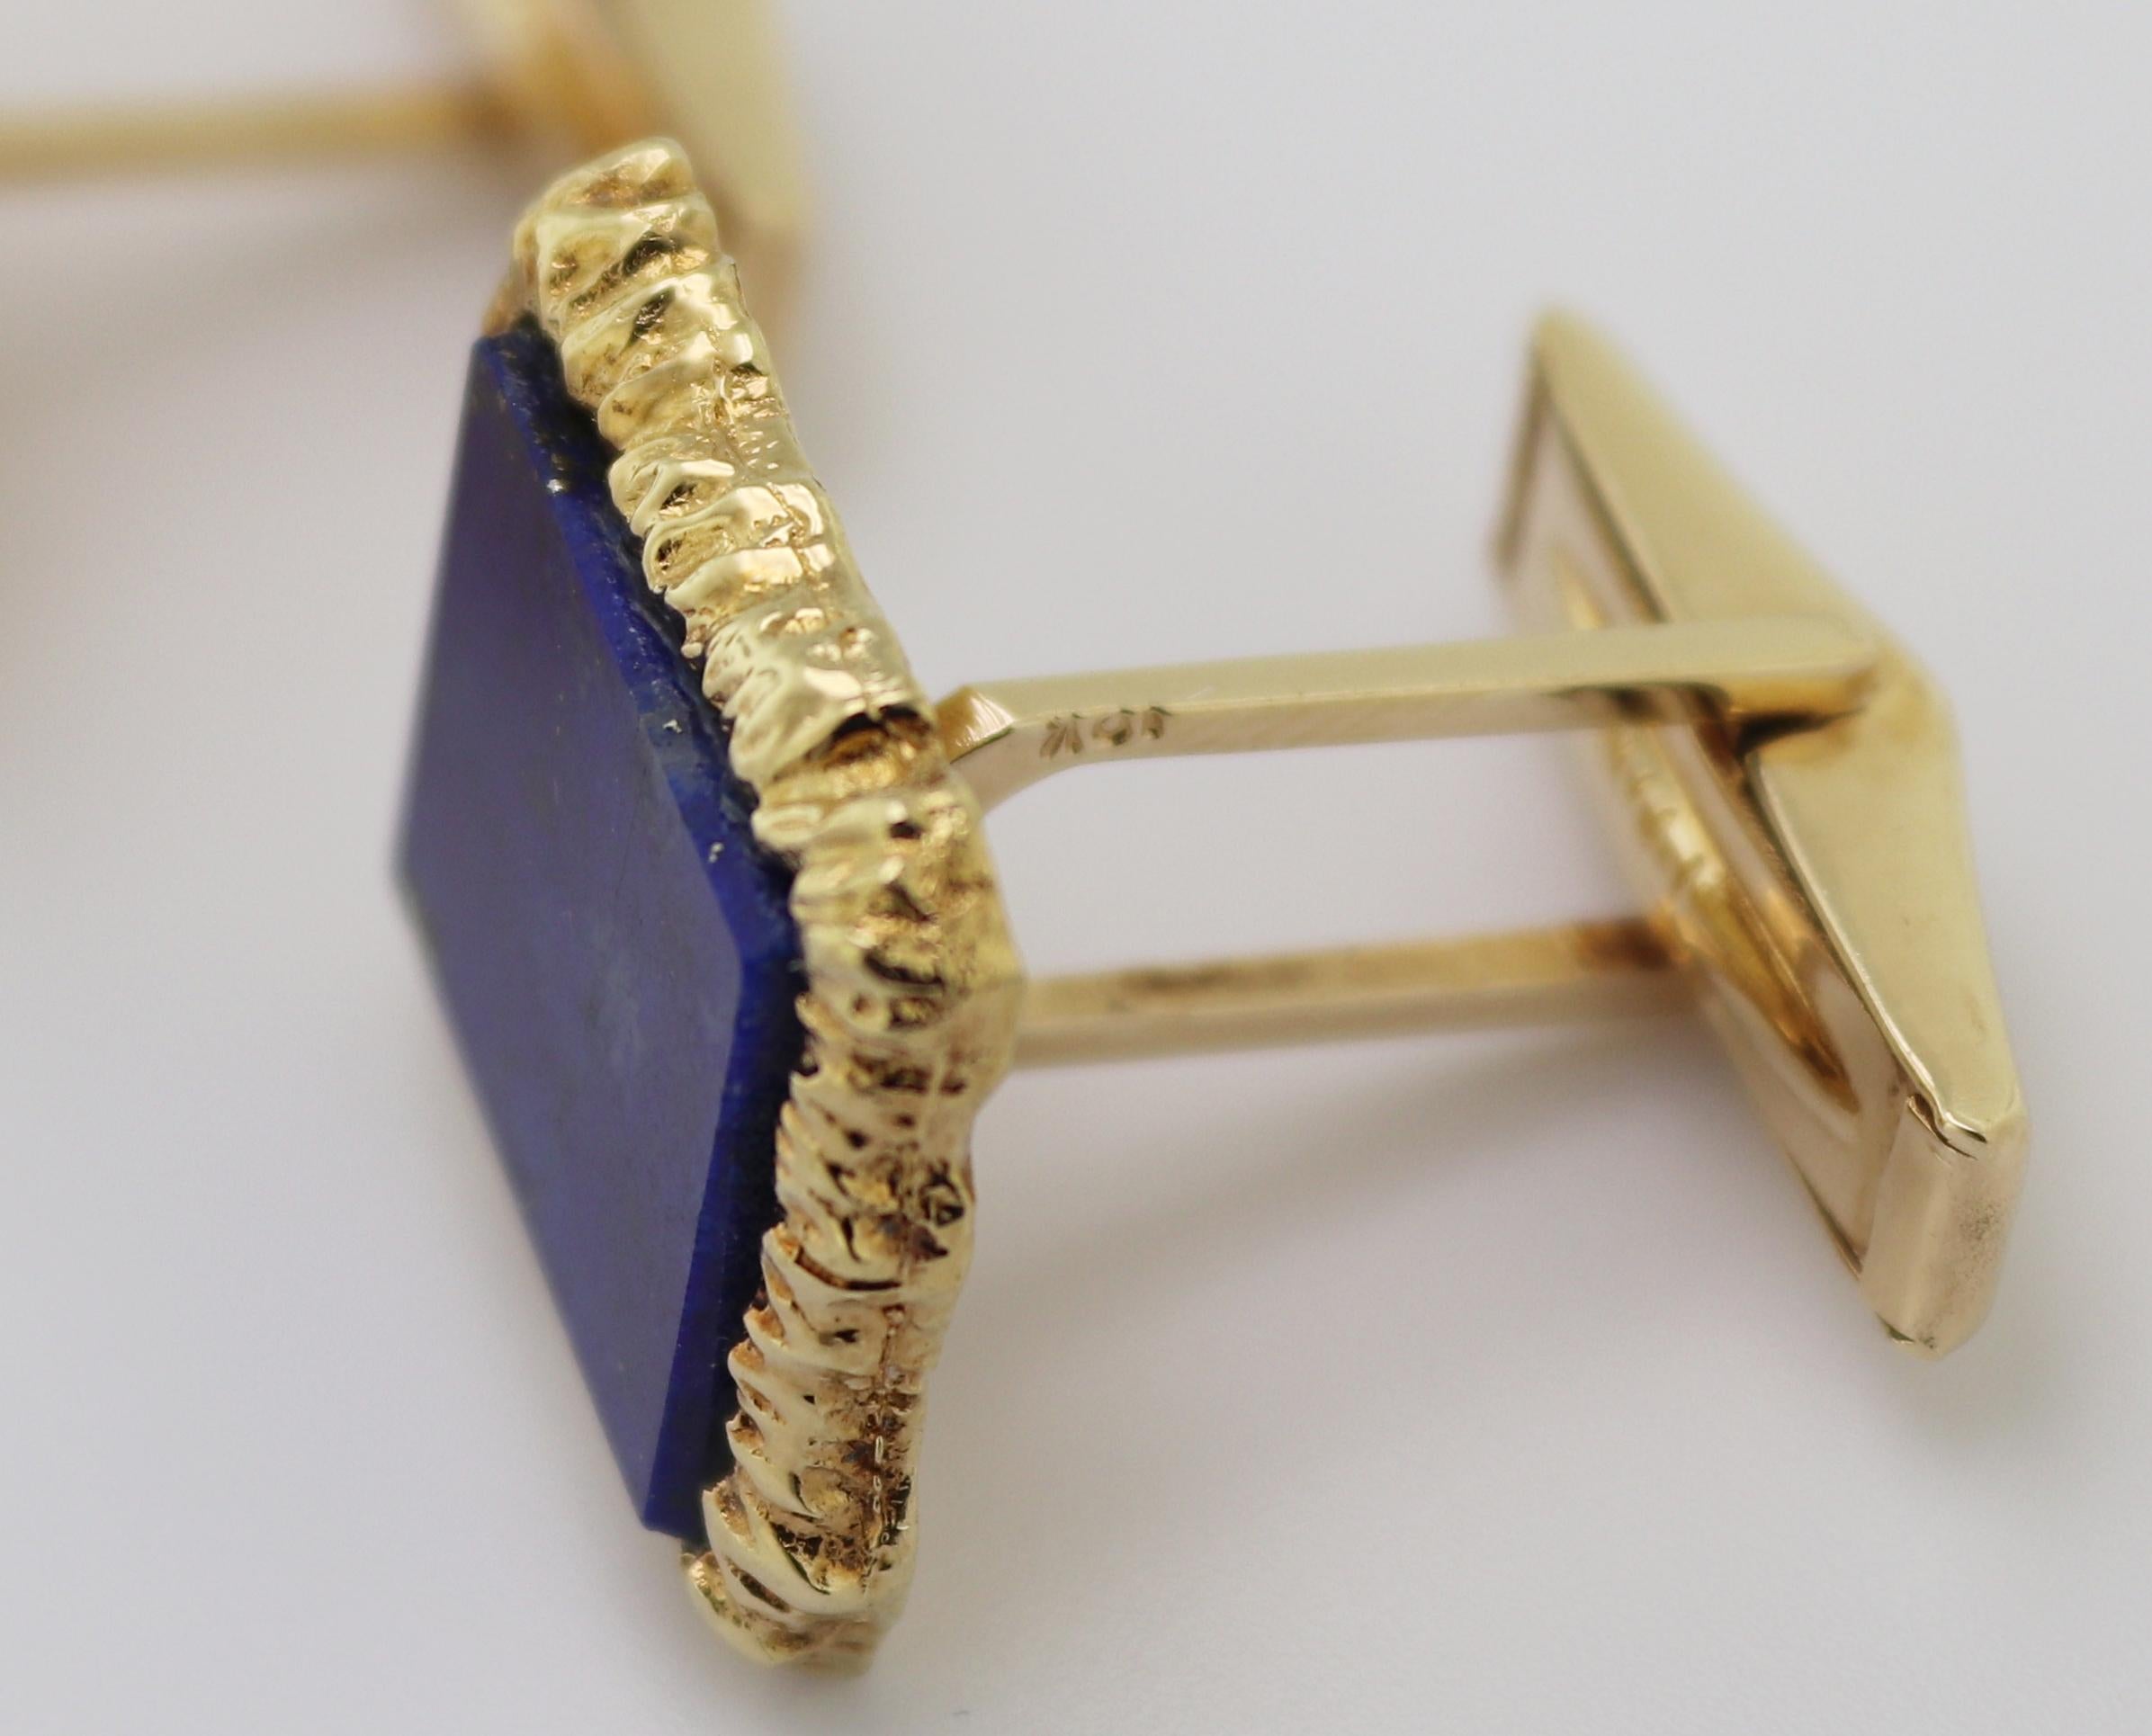 Chacune d'elles comporte (1) tablette rectangulaire en lapis-lazuli, 14 X 12 X 1,6 mm, sertie dans une boîte en métal.
une monture rectangulaire en or jaune 14k à texture irrégulière, 18.7 X
16,4 3,2 mm, complétées par des dos tournants en or jaune